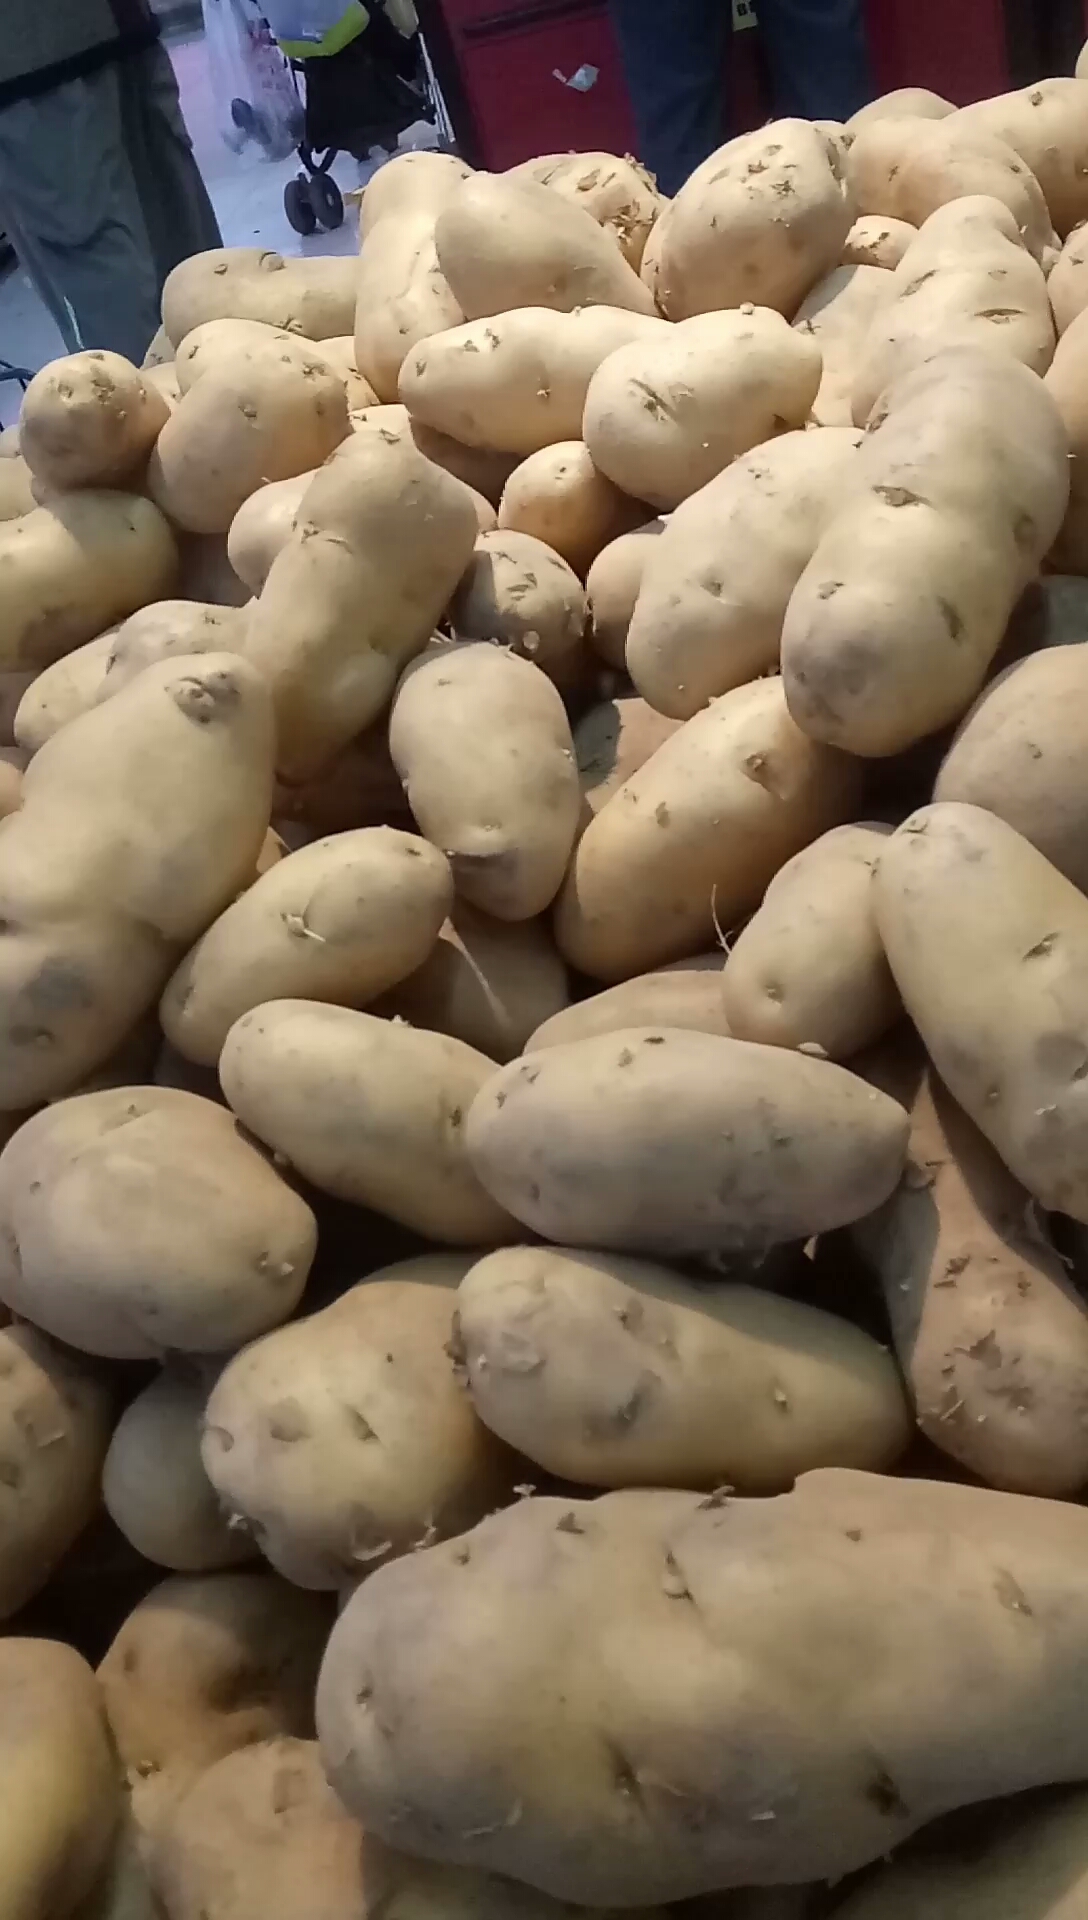 超市的土豆便宜,全是发芽的,你们会买吗?